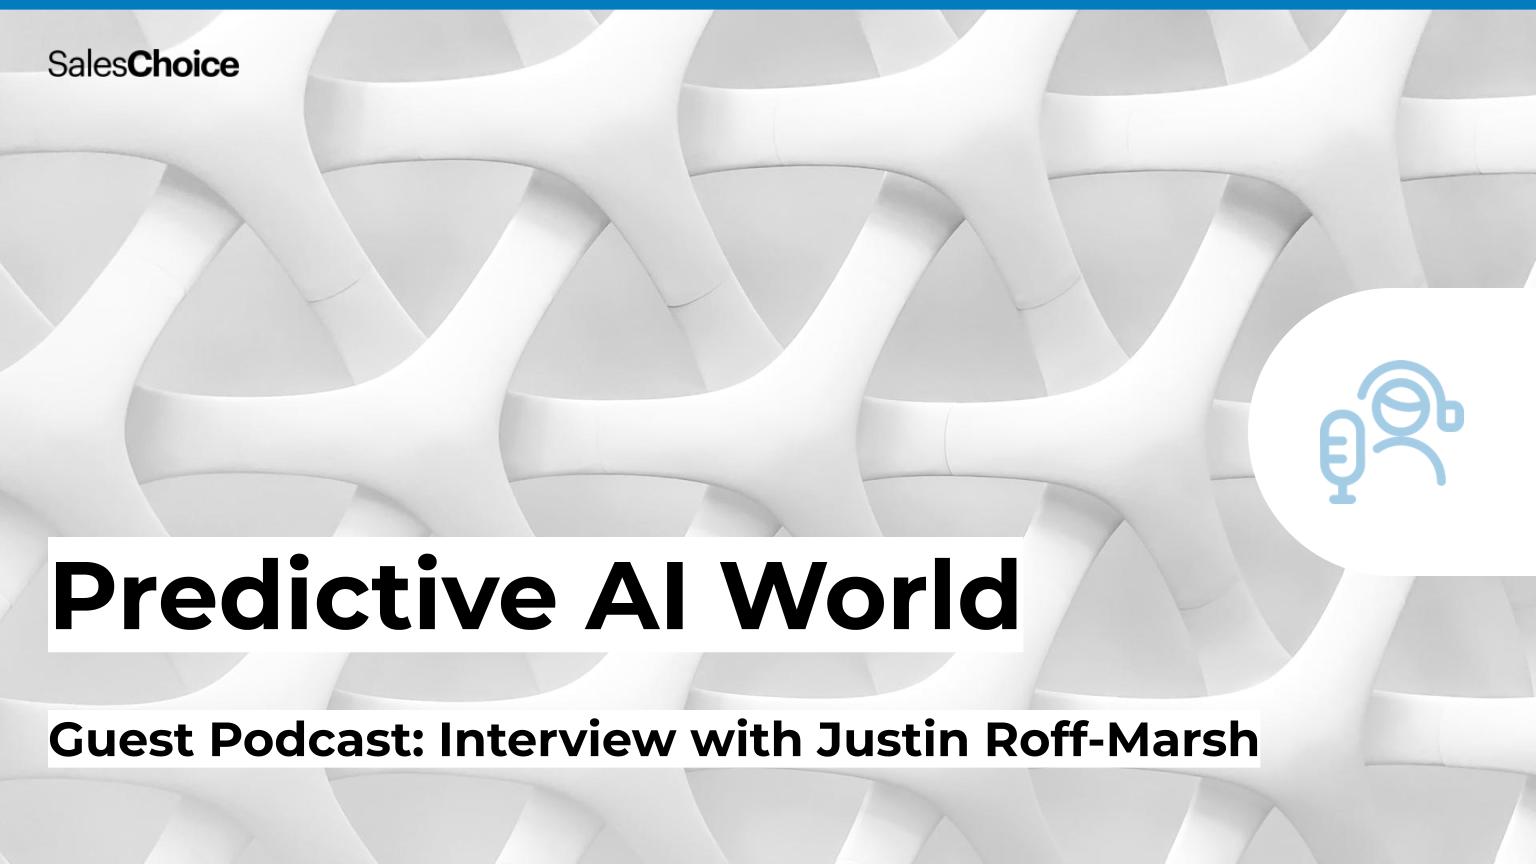 Podcast: Predictive AI World - Justin Roff